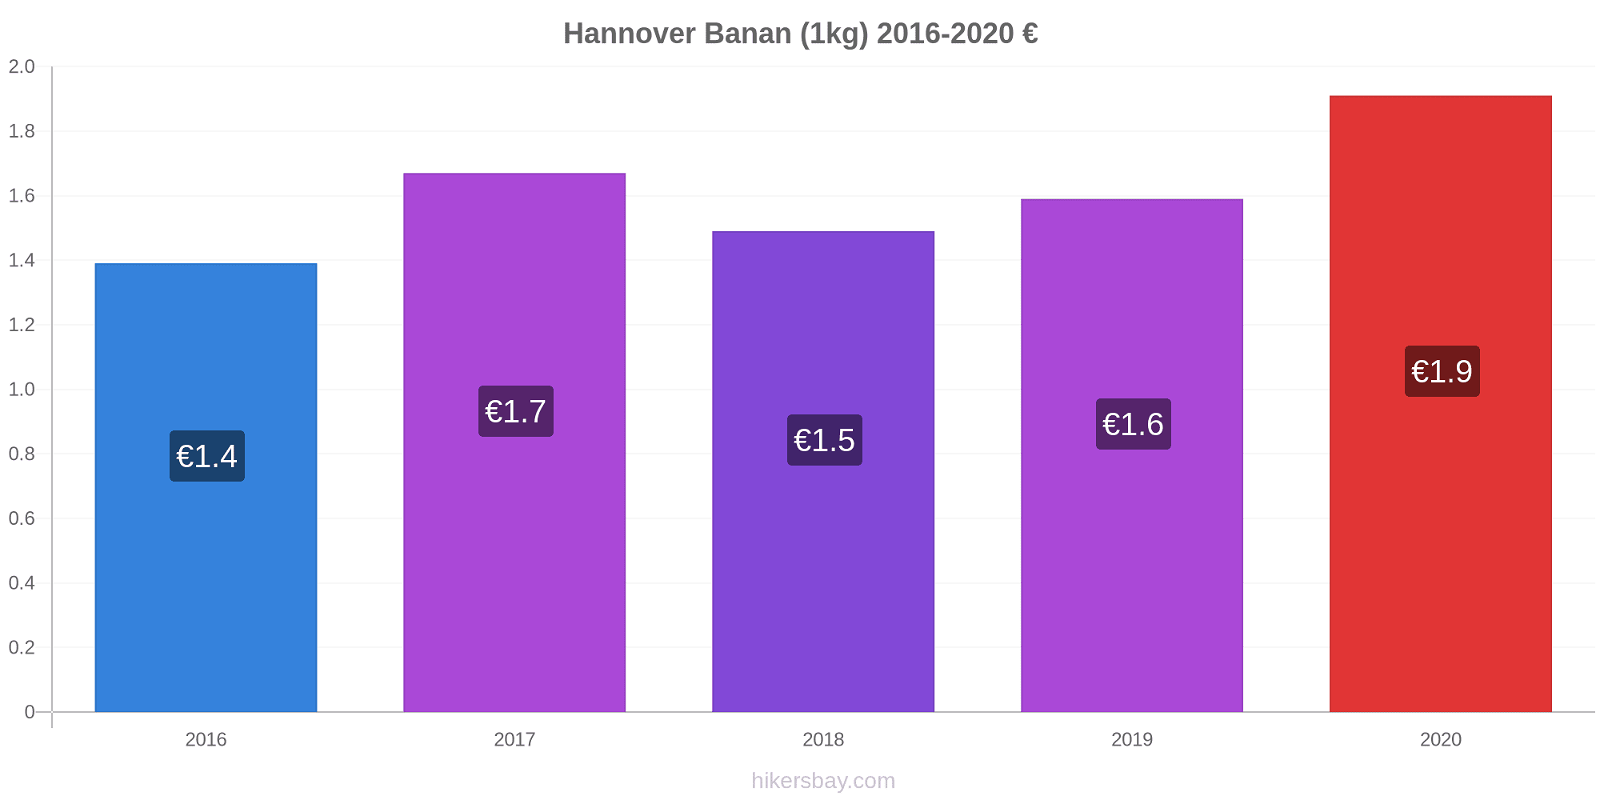 Hannover prisændringer Banan (1kg) hikersbay.com